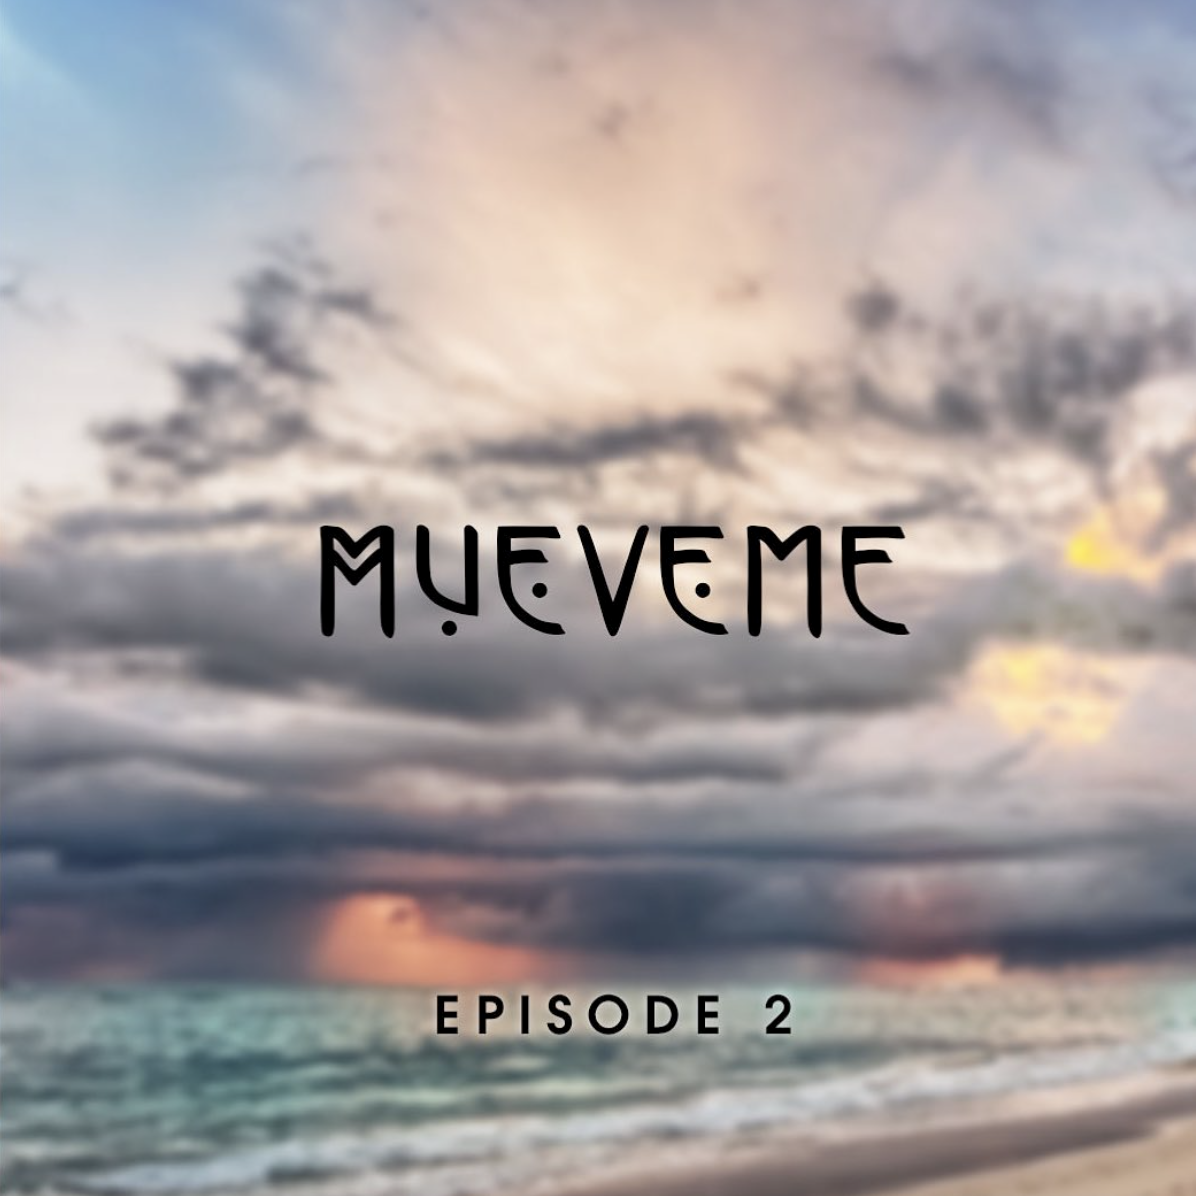 Mueveme Episode 2 Eyes Wide Open